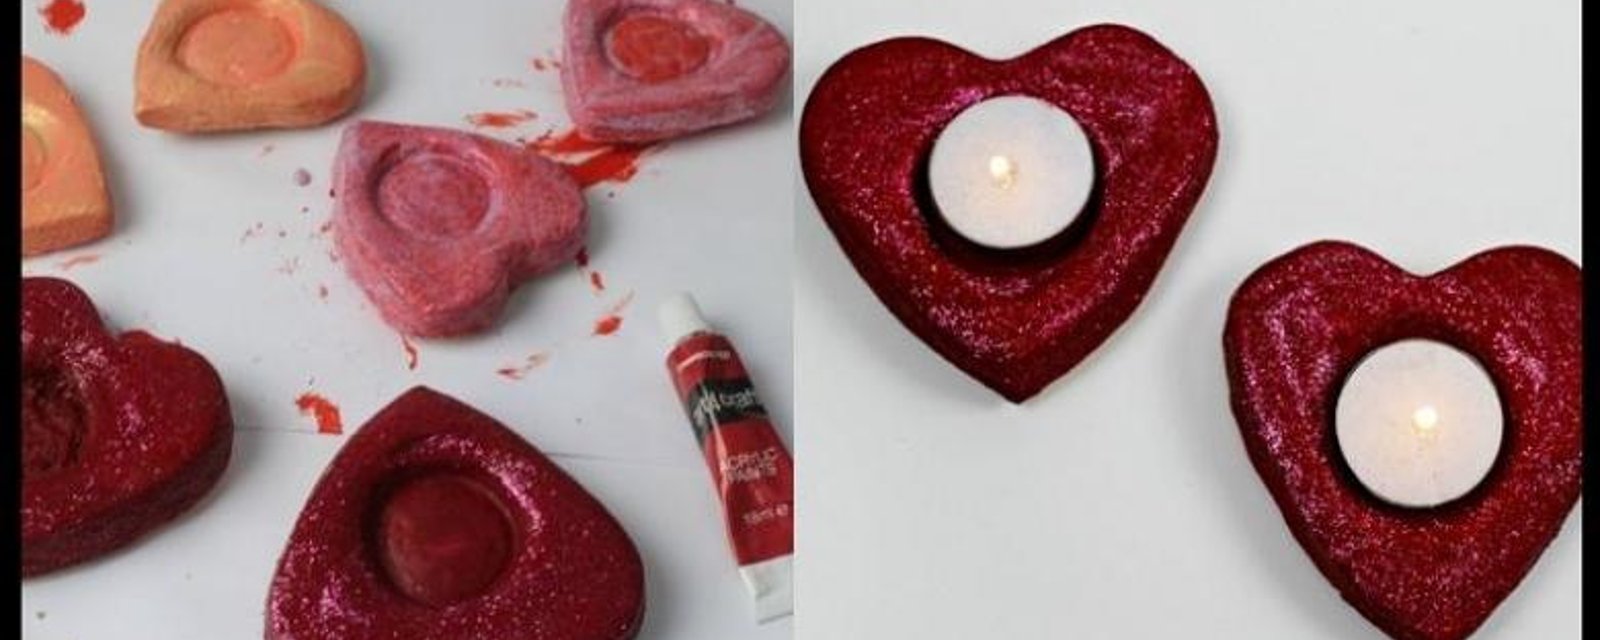 Des bougies en coeur faciles à fabriquer pour la St-Valentin!